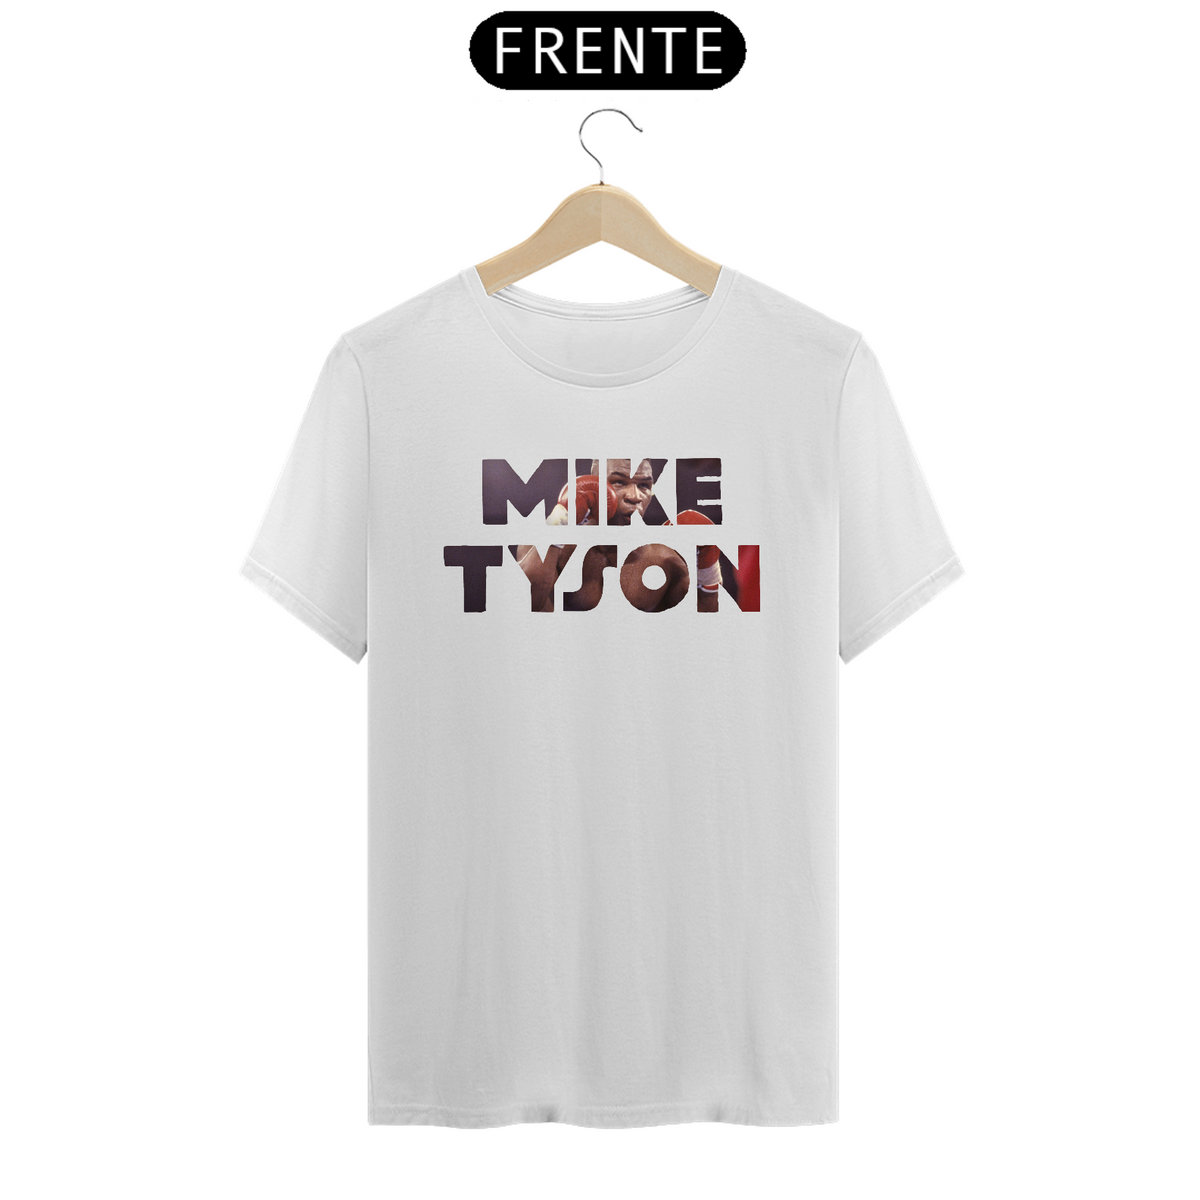 Nome do produto: Camiseta - MIKE TYSON